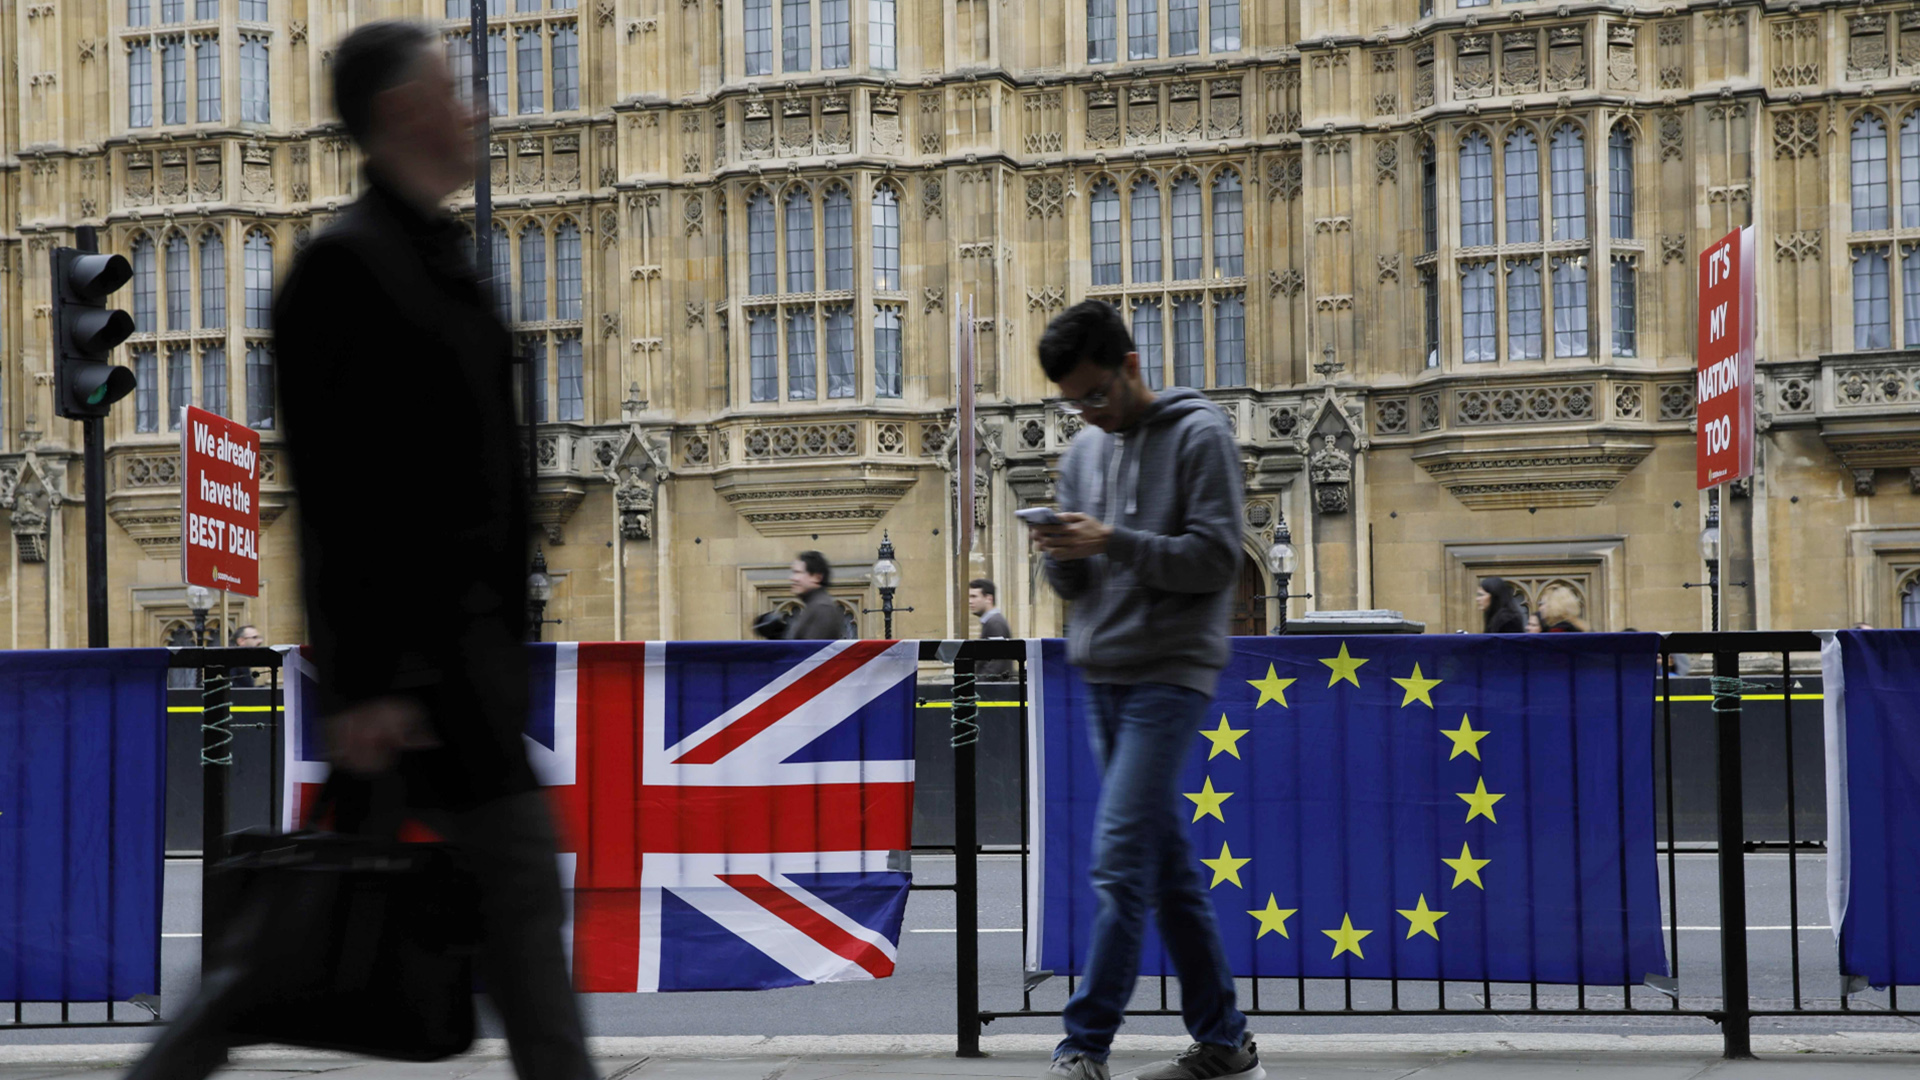 Passanten laufen an der britischen und europäischen Flagge vor dem britischen Parlament vorbei.